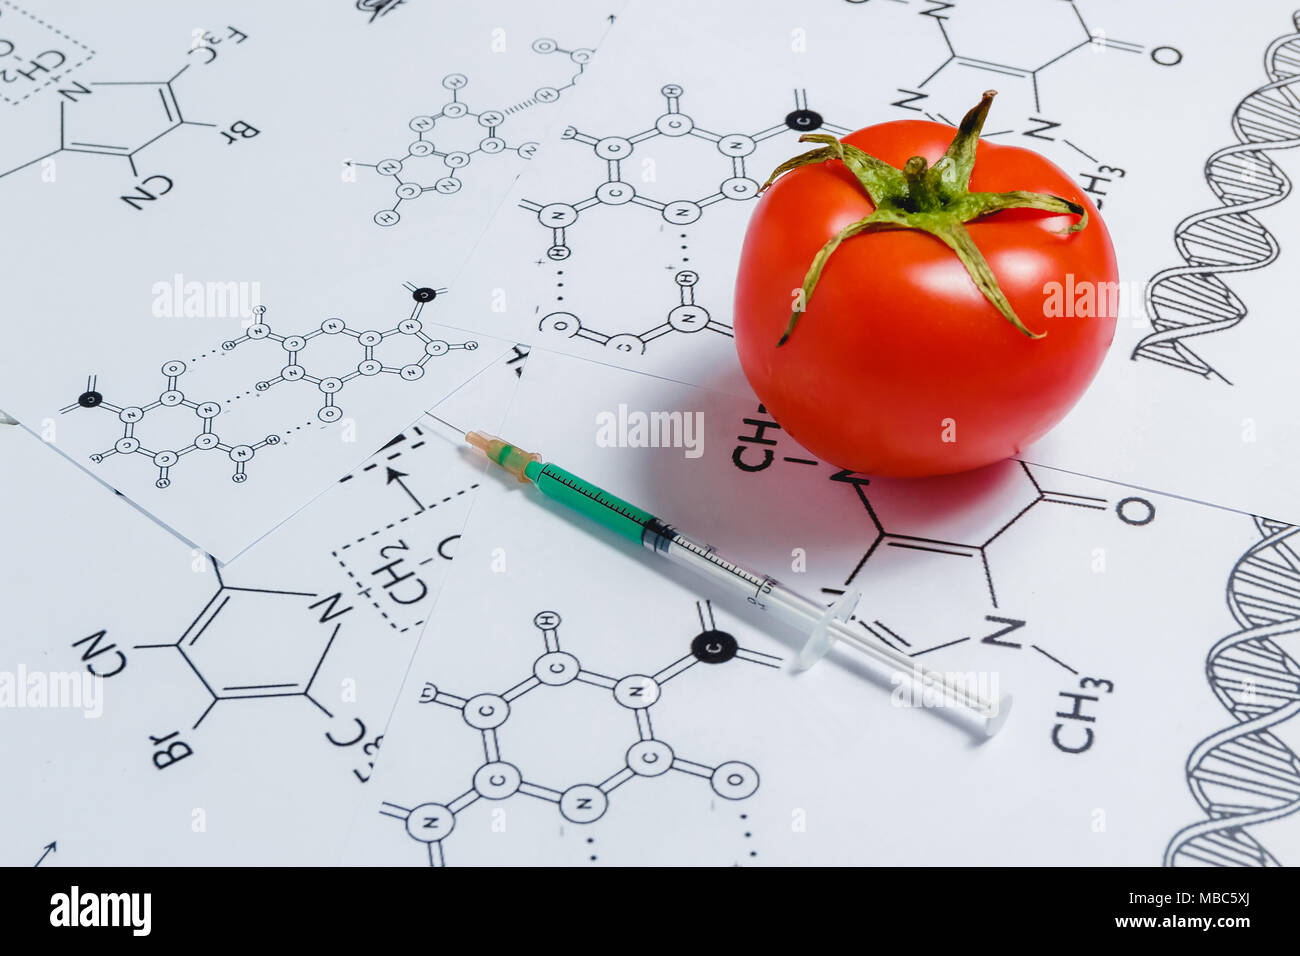 Concetto di Non-prodotti naturali, ogm. Siringa e pomodoro rosso su sfondo bianco con formula chimica Foto Stock